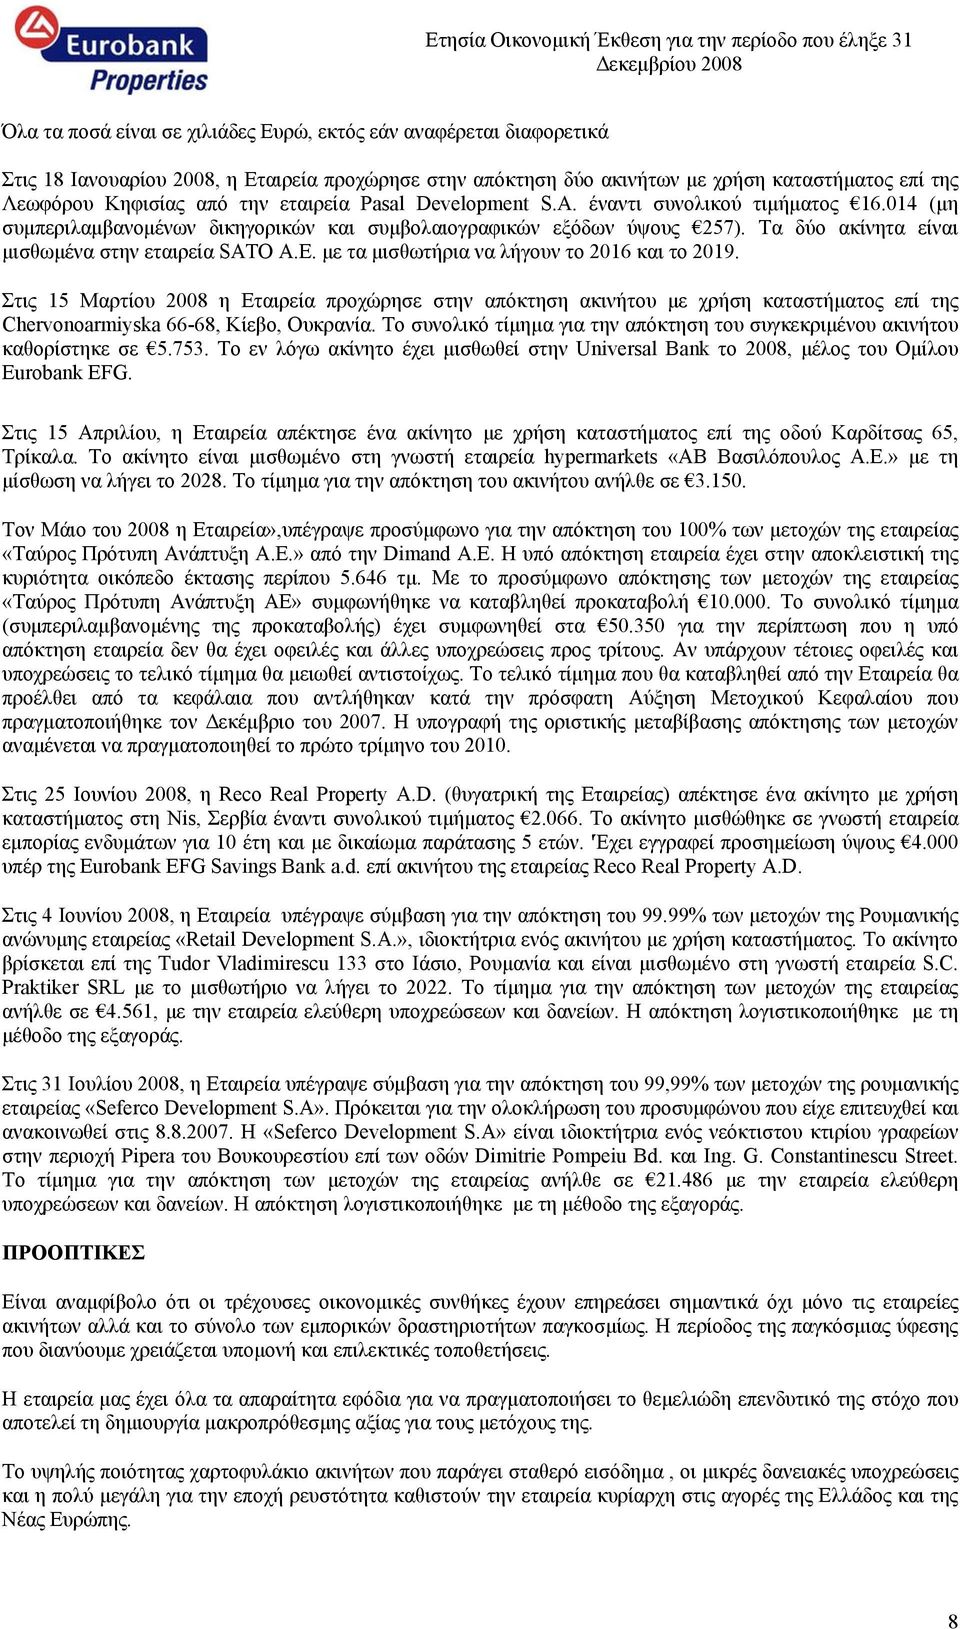 με τα μισθωτήρια να λήγουν το 2016 και το 2019. Στις 15 Μαρτίου 2008 η Εταιρεία προχώρησε στην απόκτηση ακινήτου με χρήση καταστήματος επί της Chervonoarmiyska 66-68, Κίεβο, Ουκρανία.